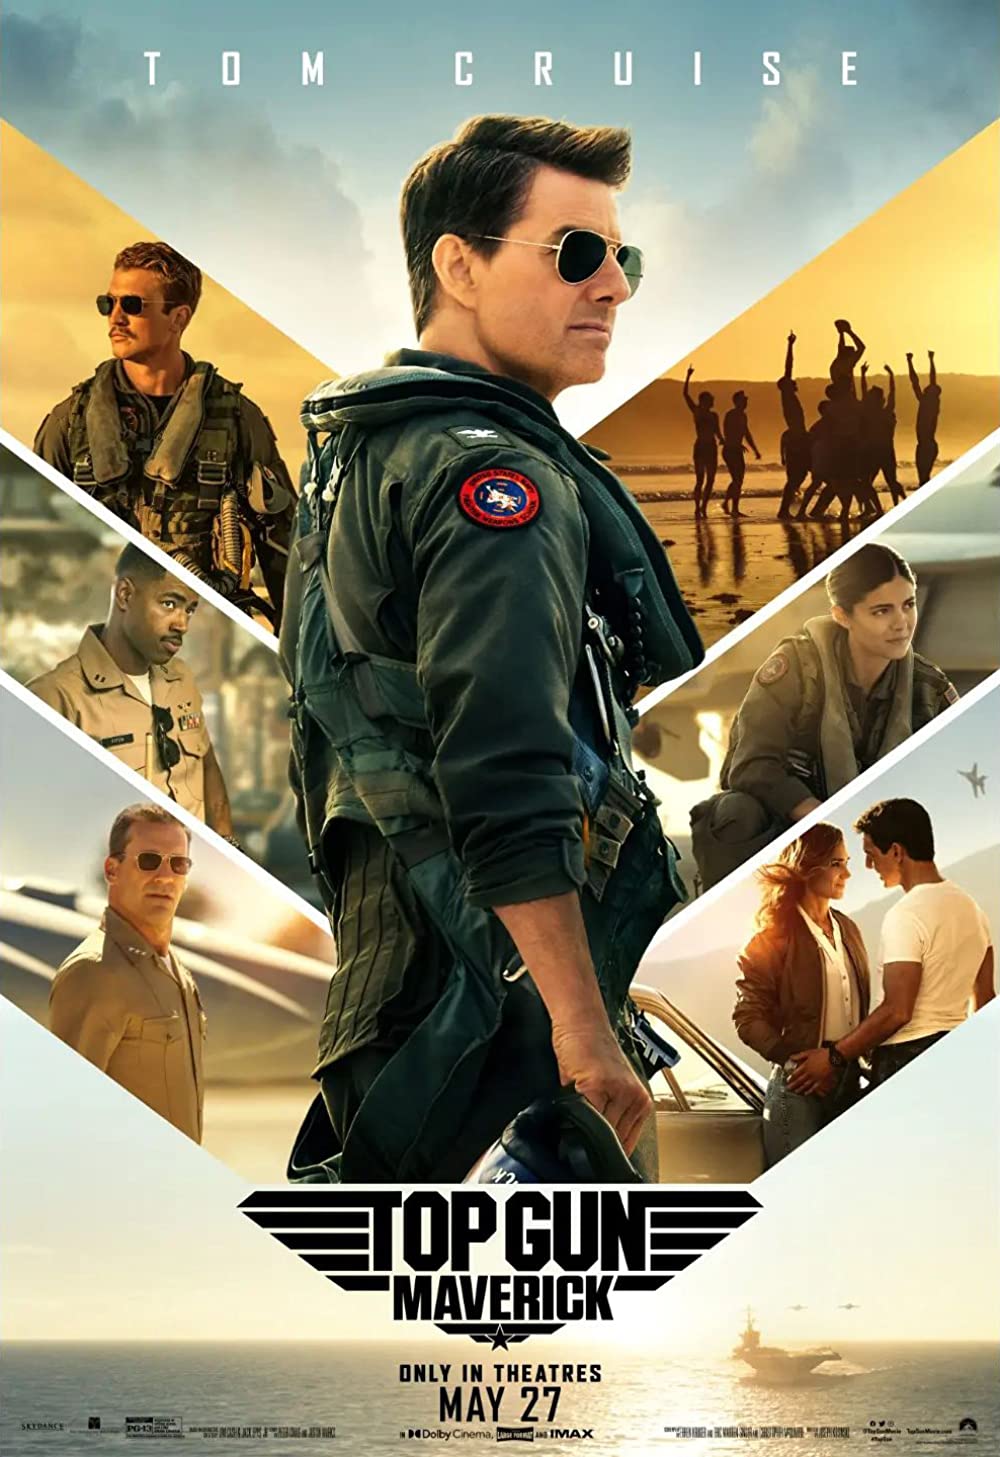 ดูหนังออนไลน์ฟรี หนังใหม่ล่าสุด Top Gun: Maverick (2022) ท็อปกัน มาเวอริค